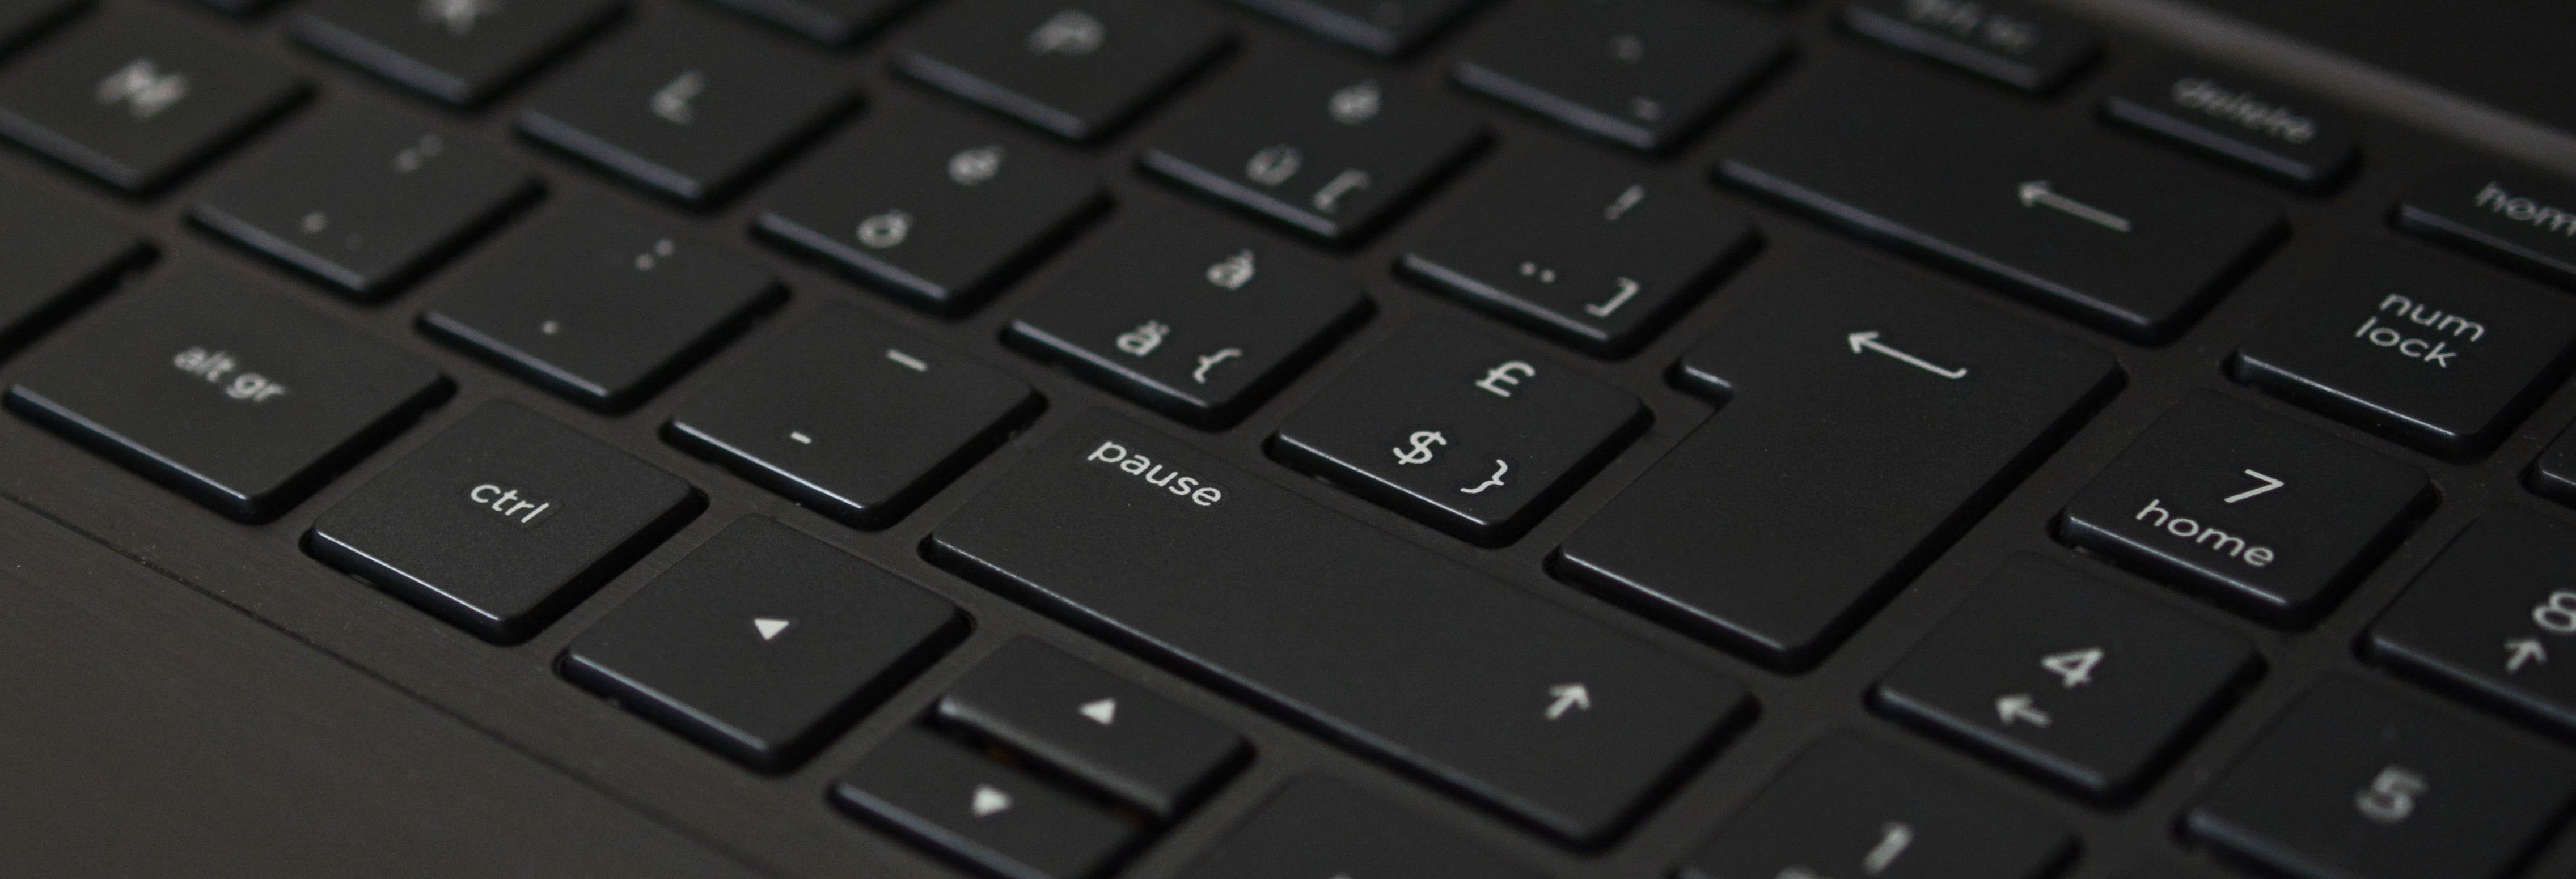 Black Laptop Computer Keyboard · Free Stock Photo